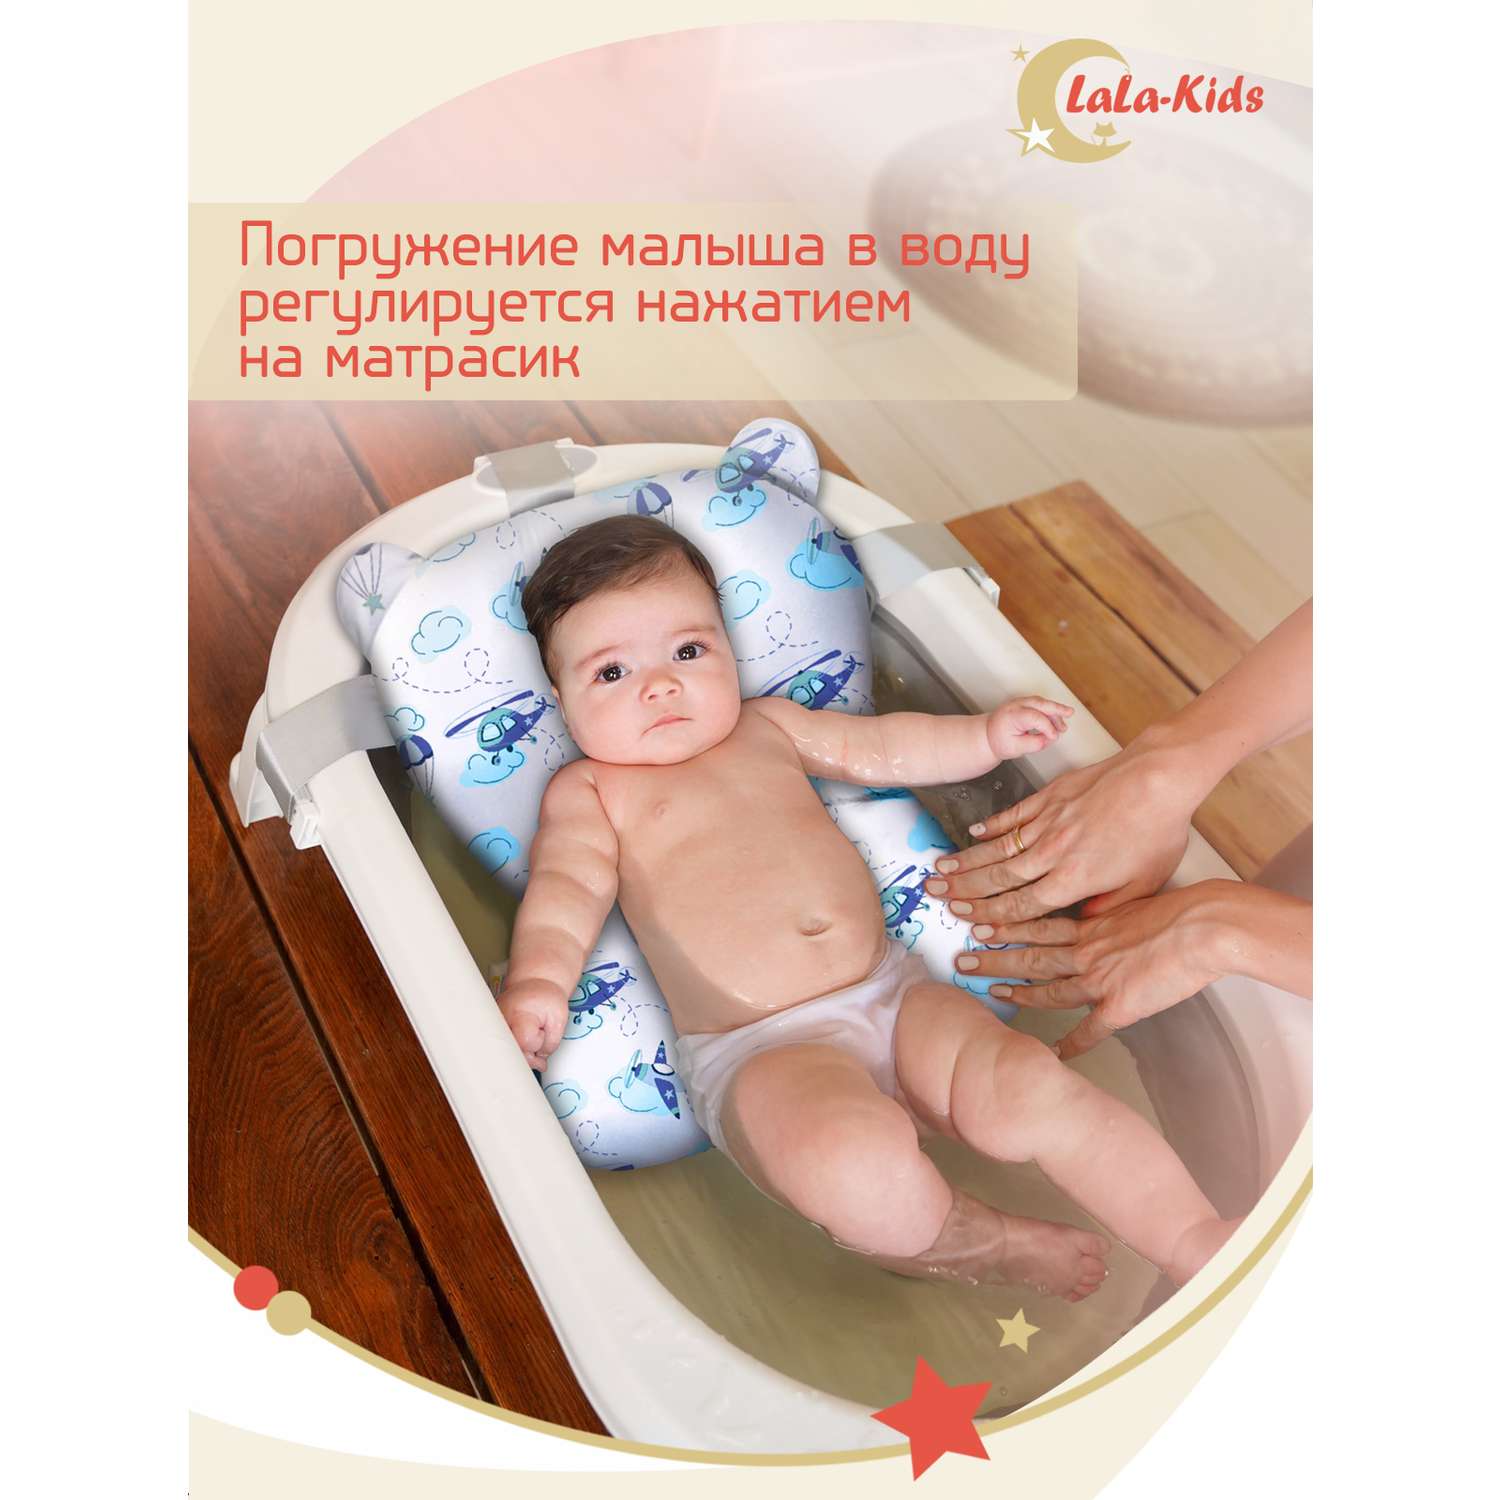 Складная ванночка LaLa-Kids для купания новорожденных с матрасиком в комплекте - фото 19